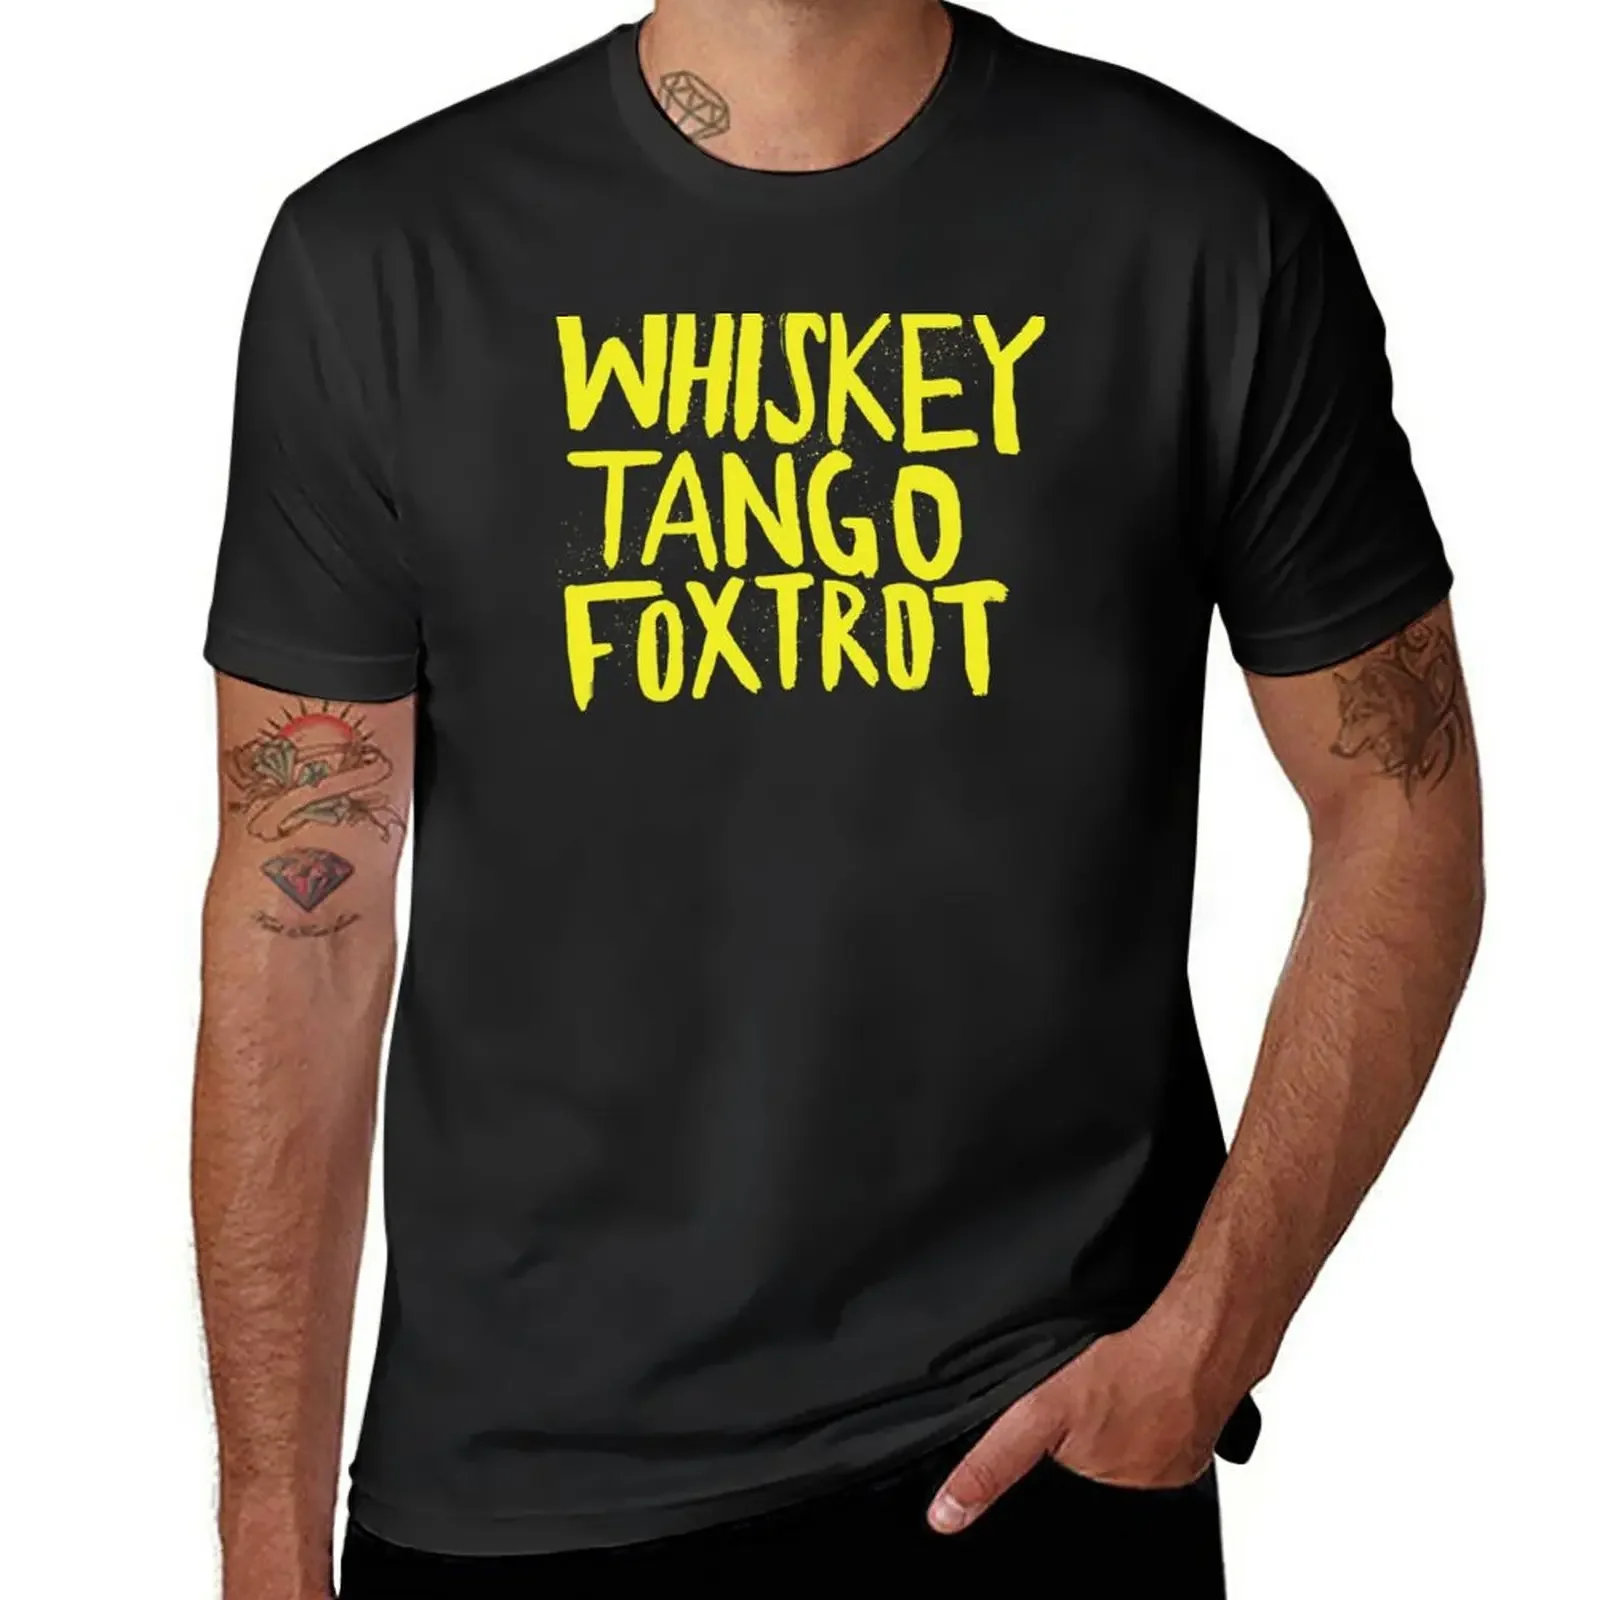 

Футболка для виски, танго, Foxtrot - Color Edition, винтажная Спортивная футболка с коротким рукавом для фанатов, размера плюс топы, футболки для мужчин graphic